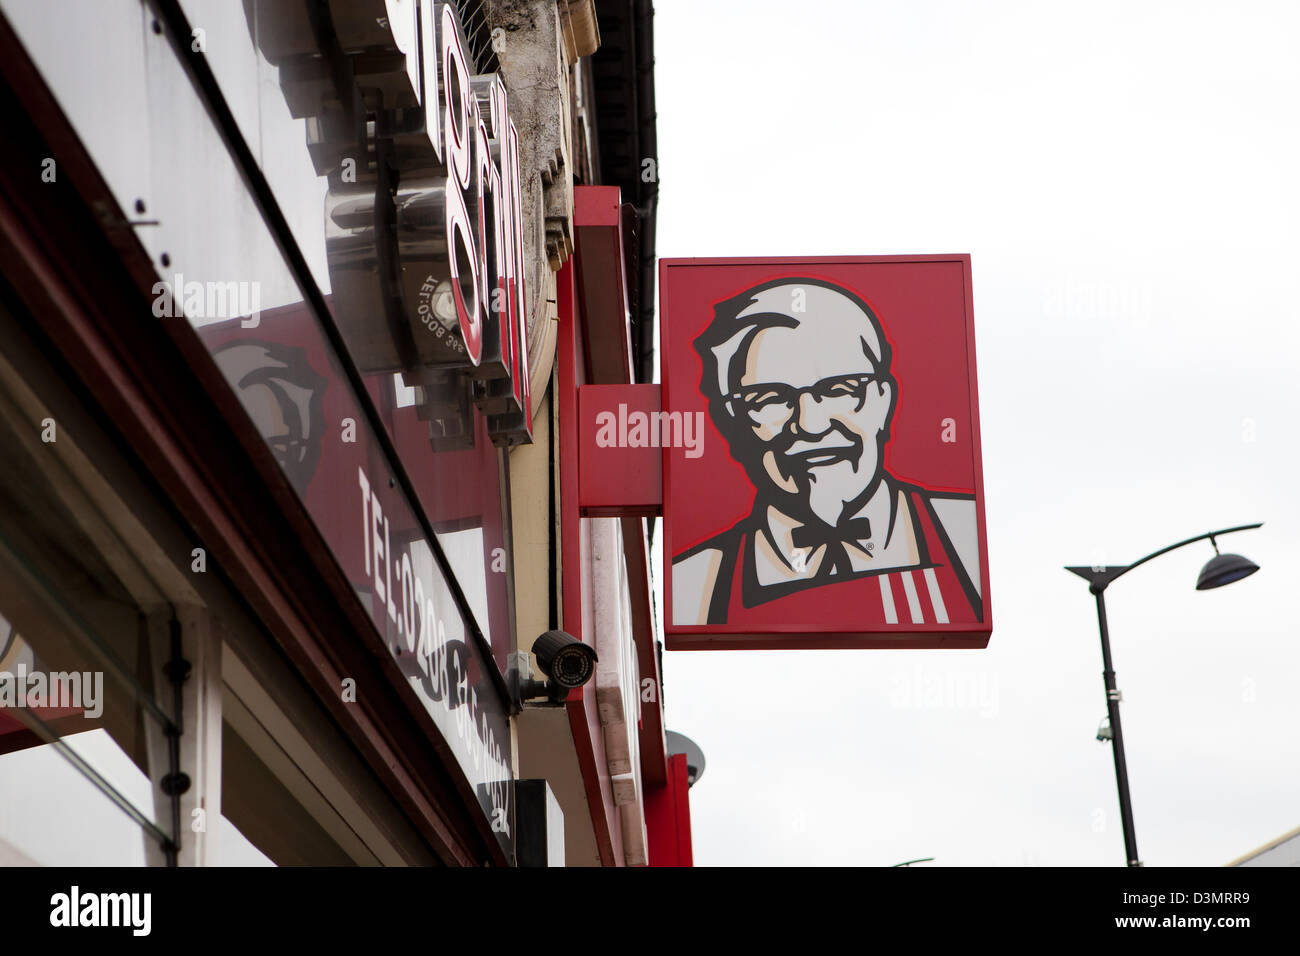 KFC shop sign Stock Photo